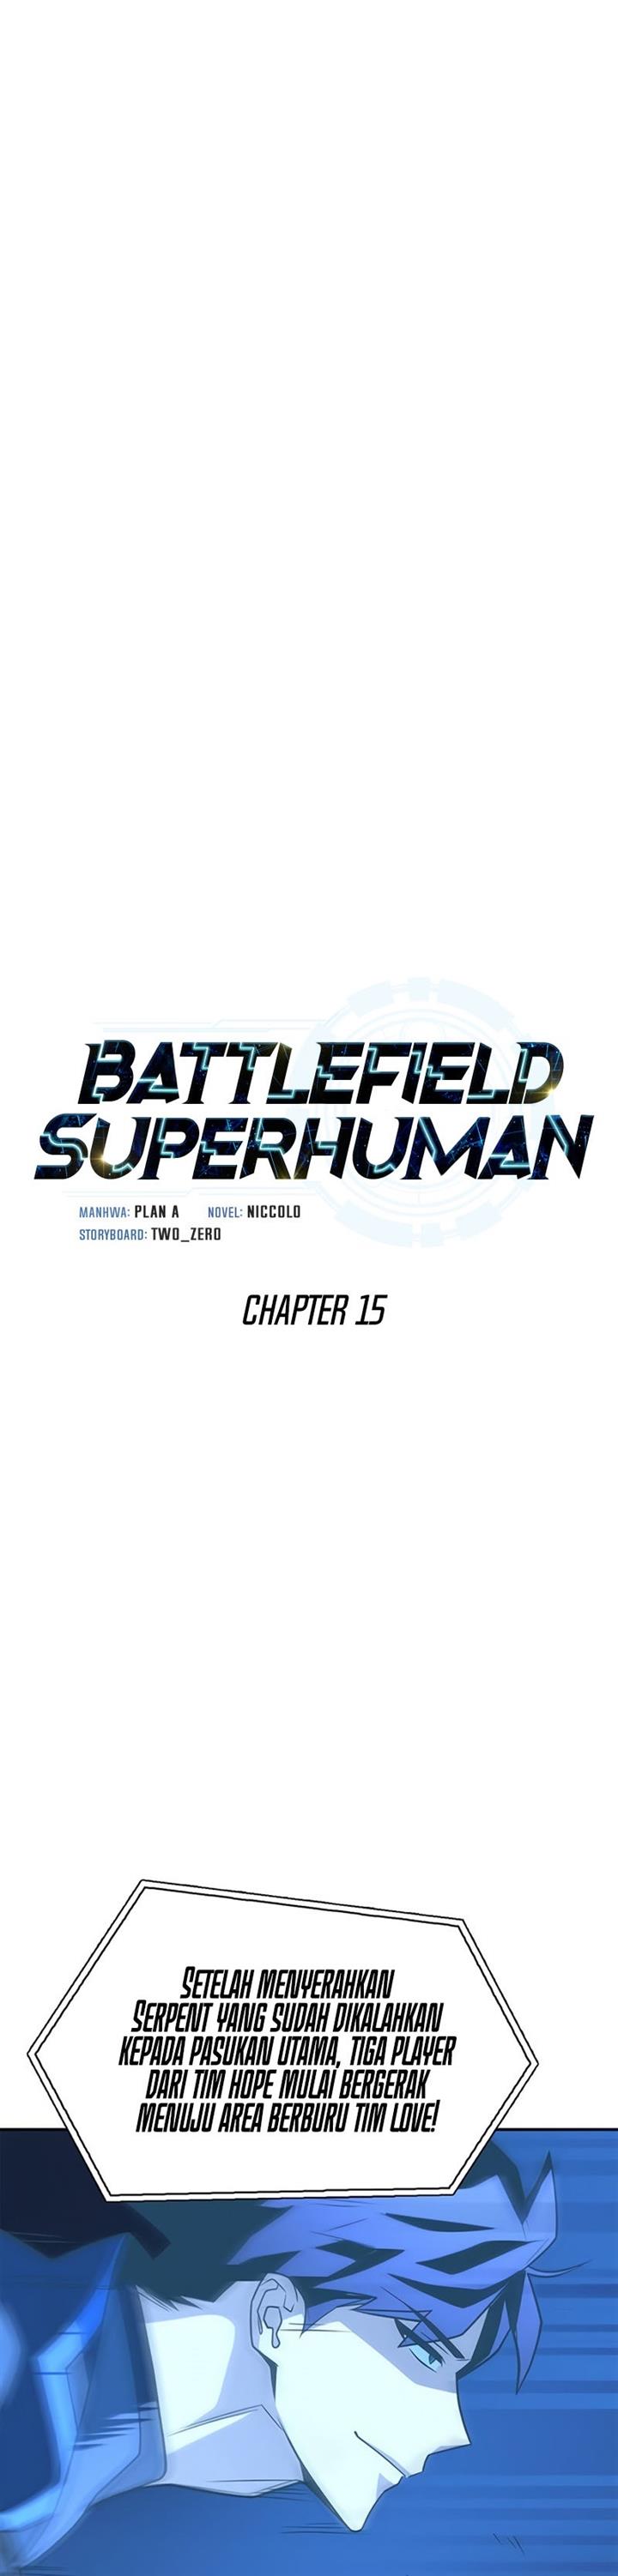 Superhuman Battlefield Chapter 15